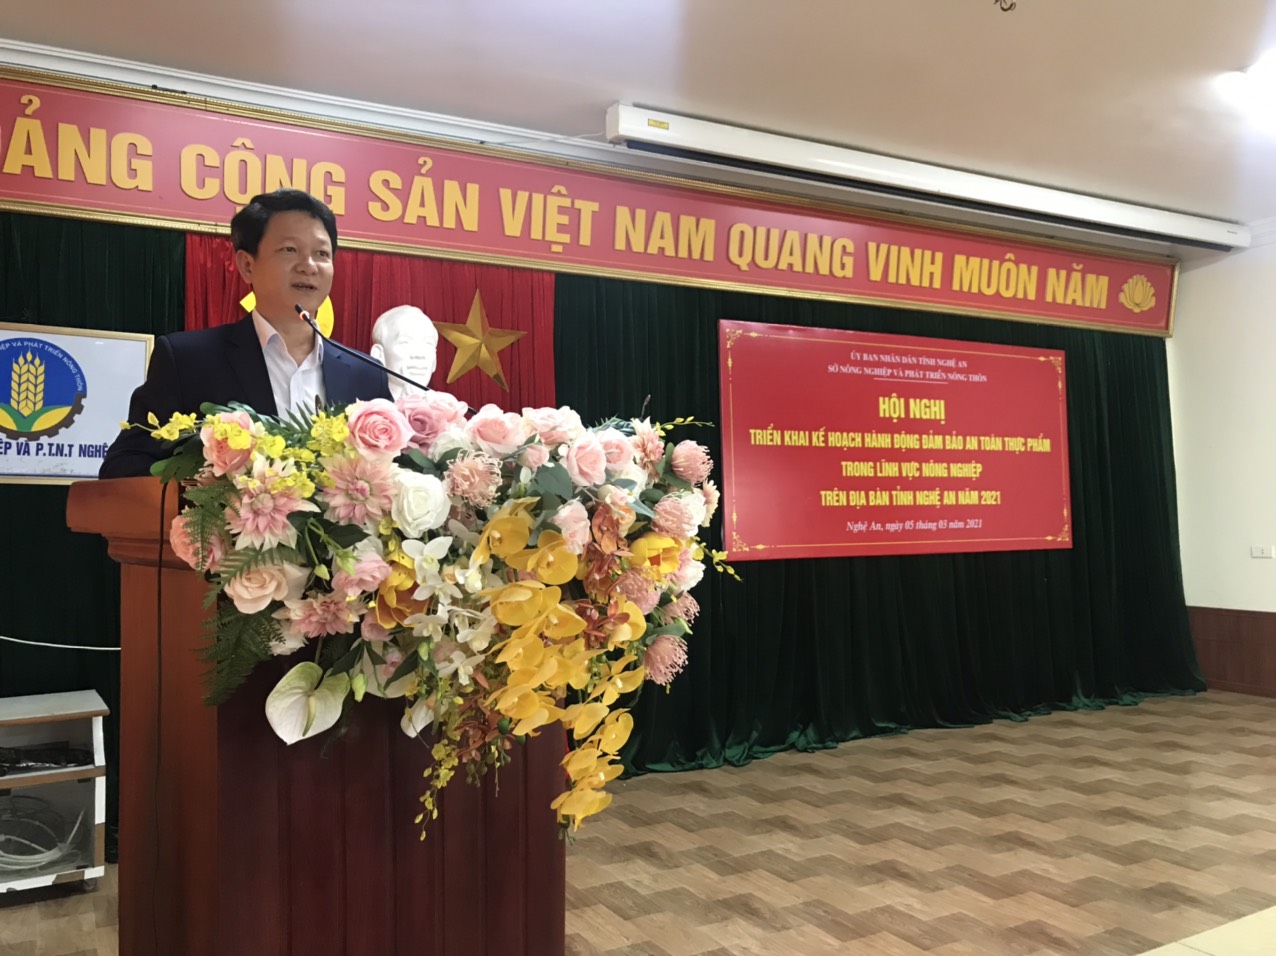 Hội nghị triển khai Kế hoạch hành động đảm bảo an toàn thực phẩm trong lĩnh vực nông nghiệp trên địa bàn tỉnh Nghệ An năm 2021